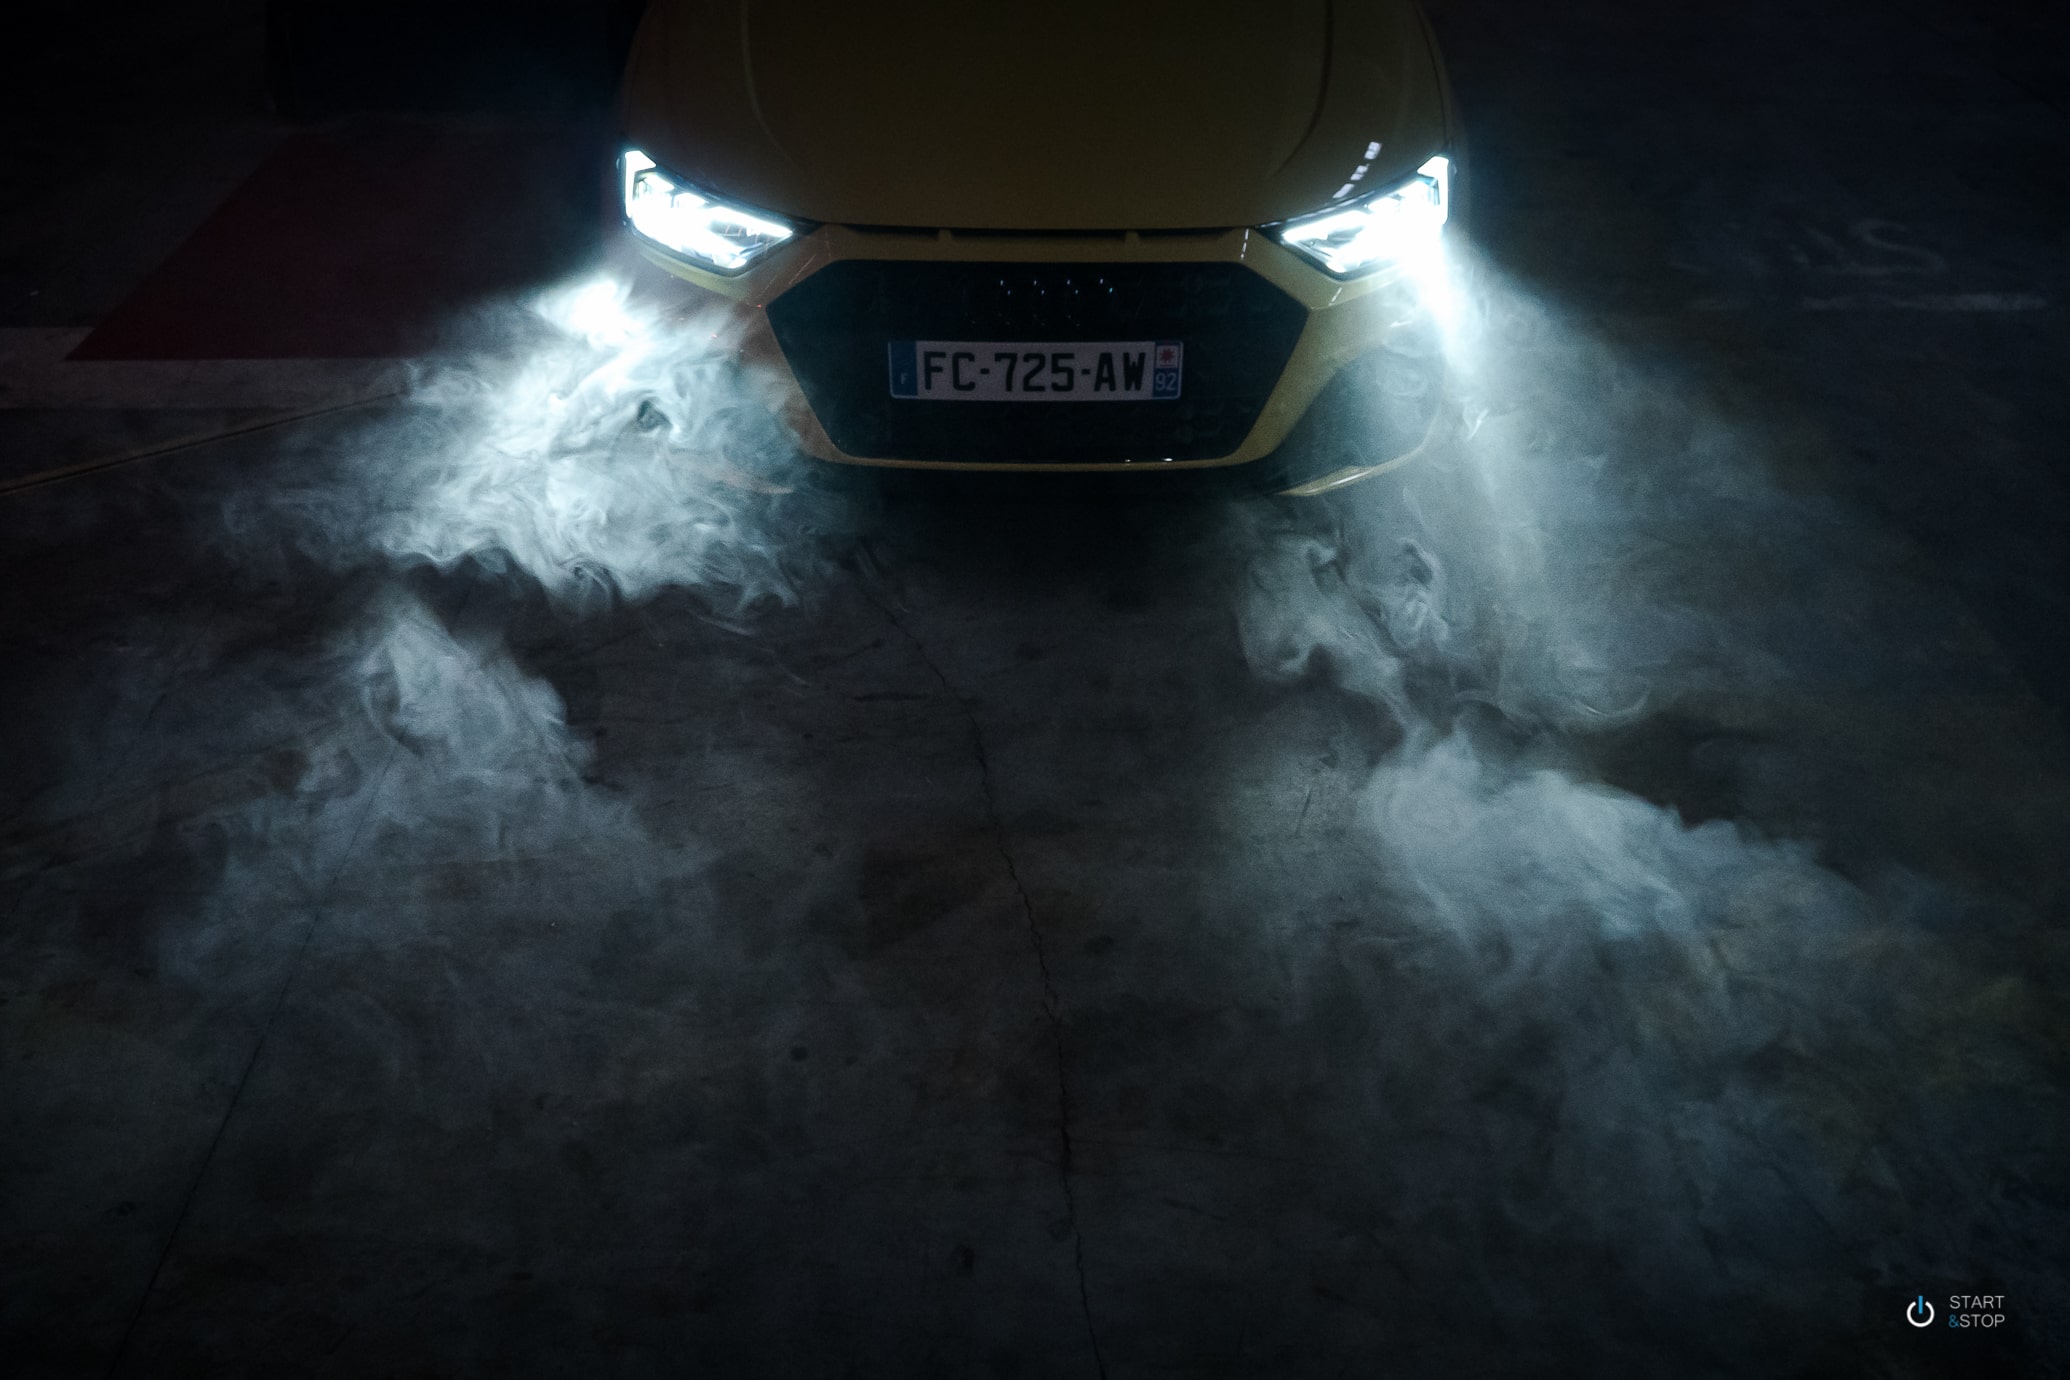 Nouvelle Audi A1